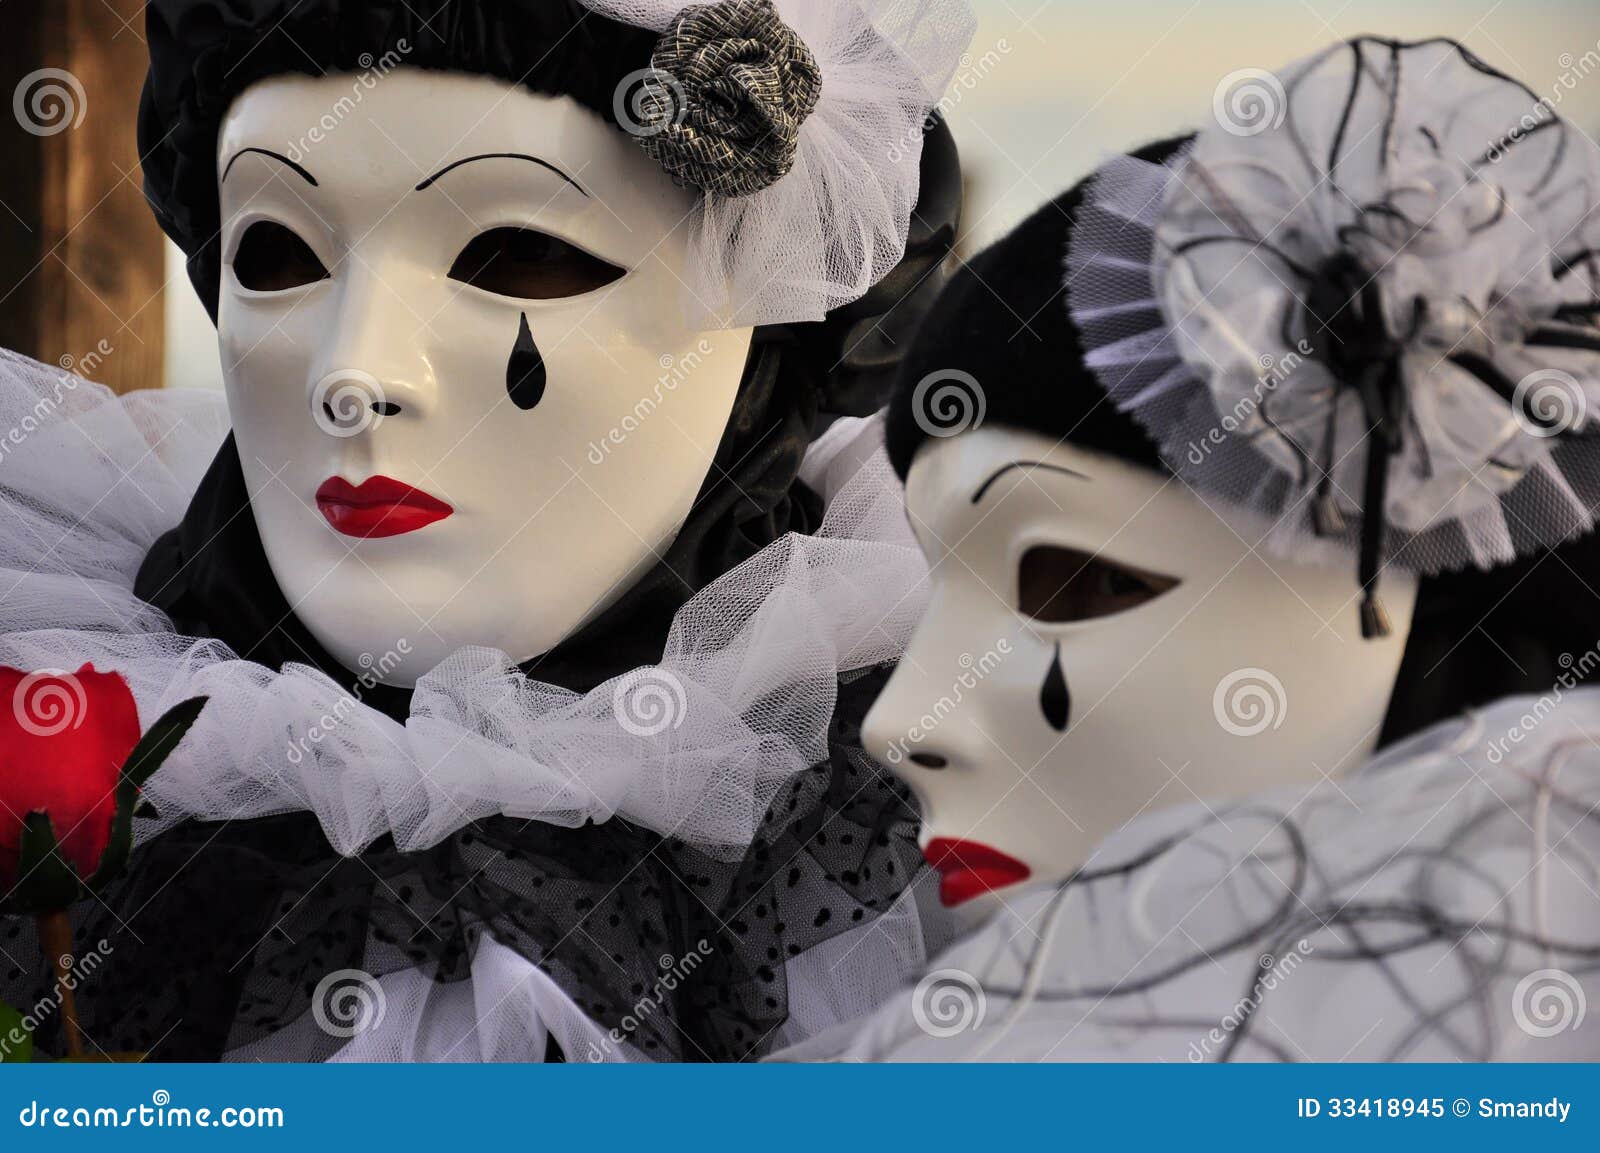 venetian pierrot masks